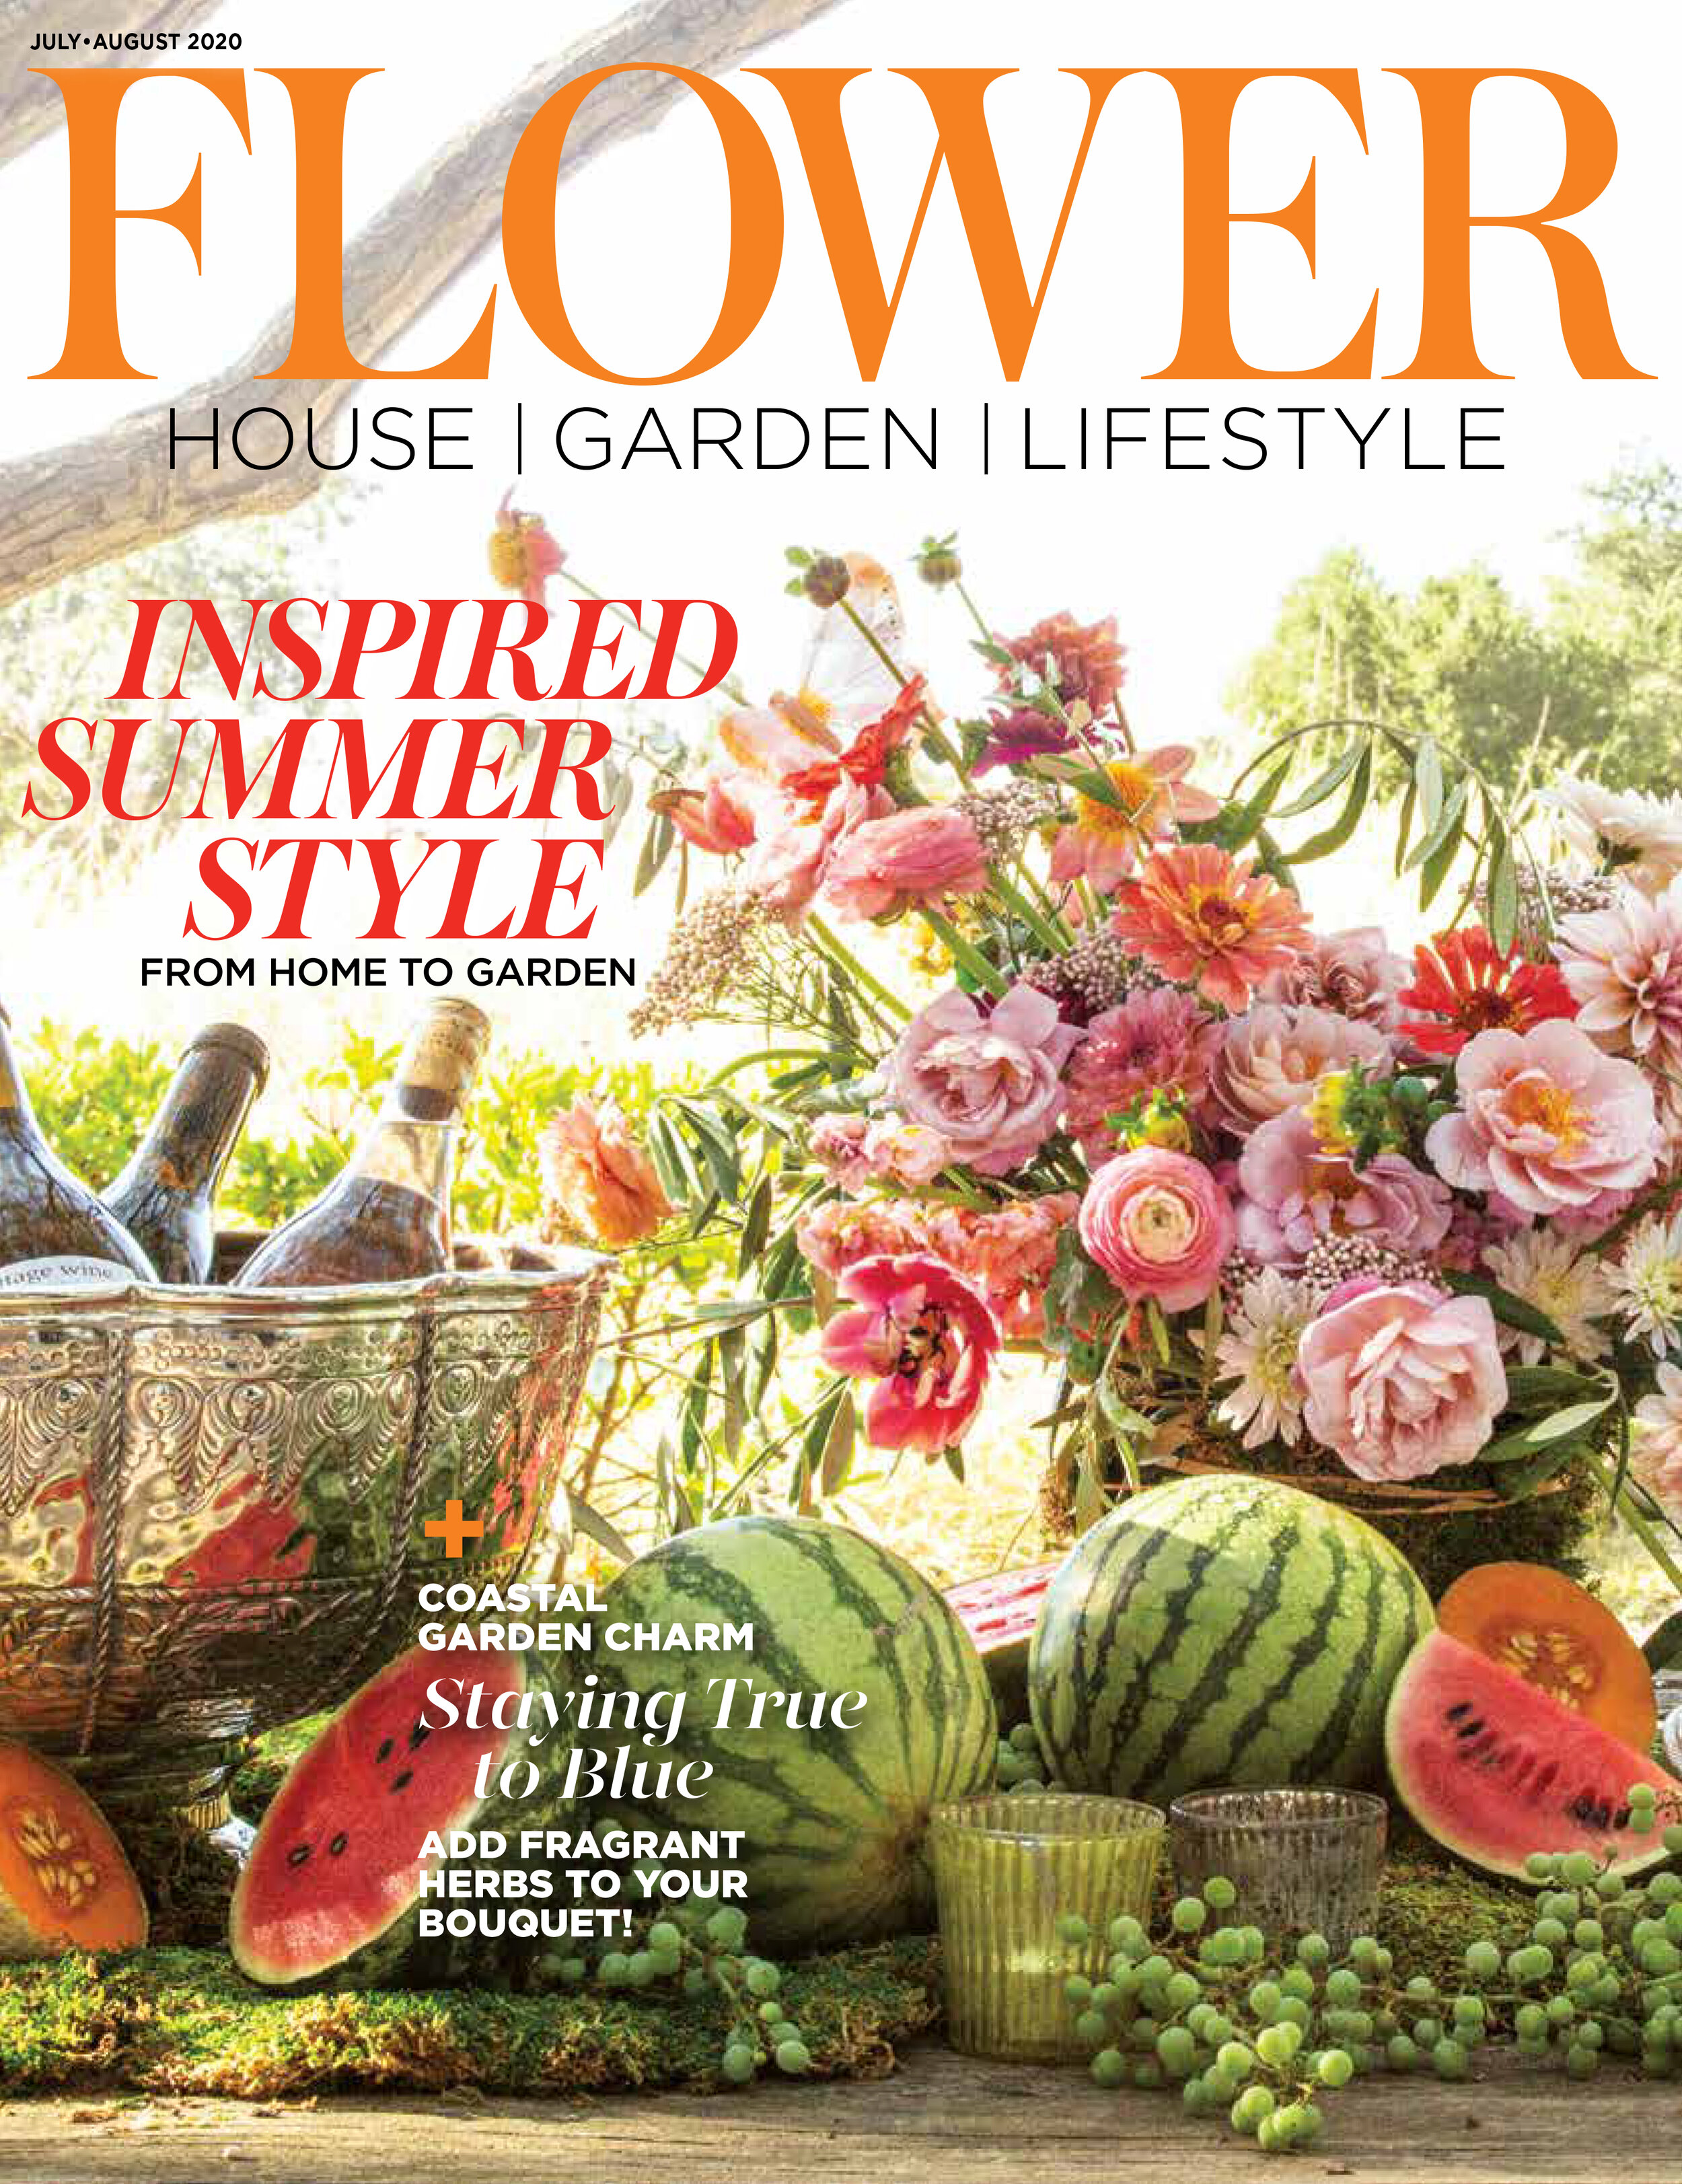 Flower Magazine July/August 2020